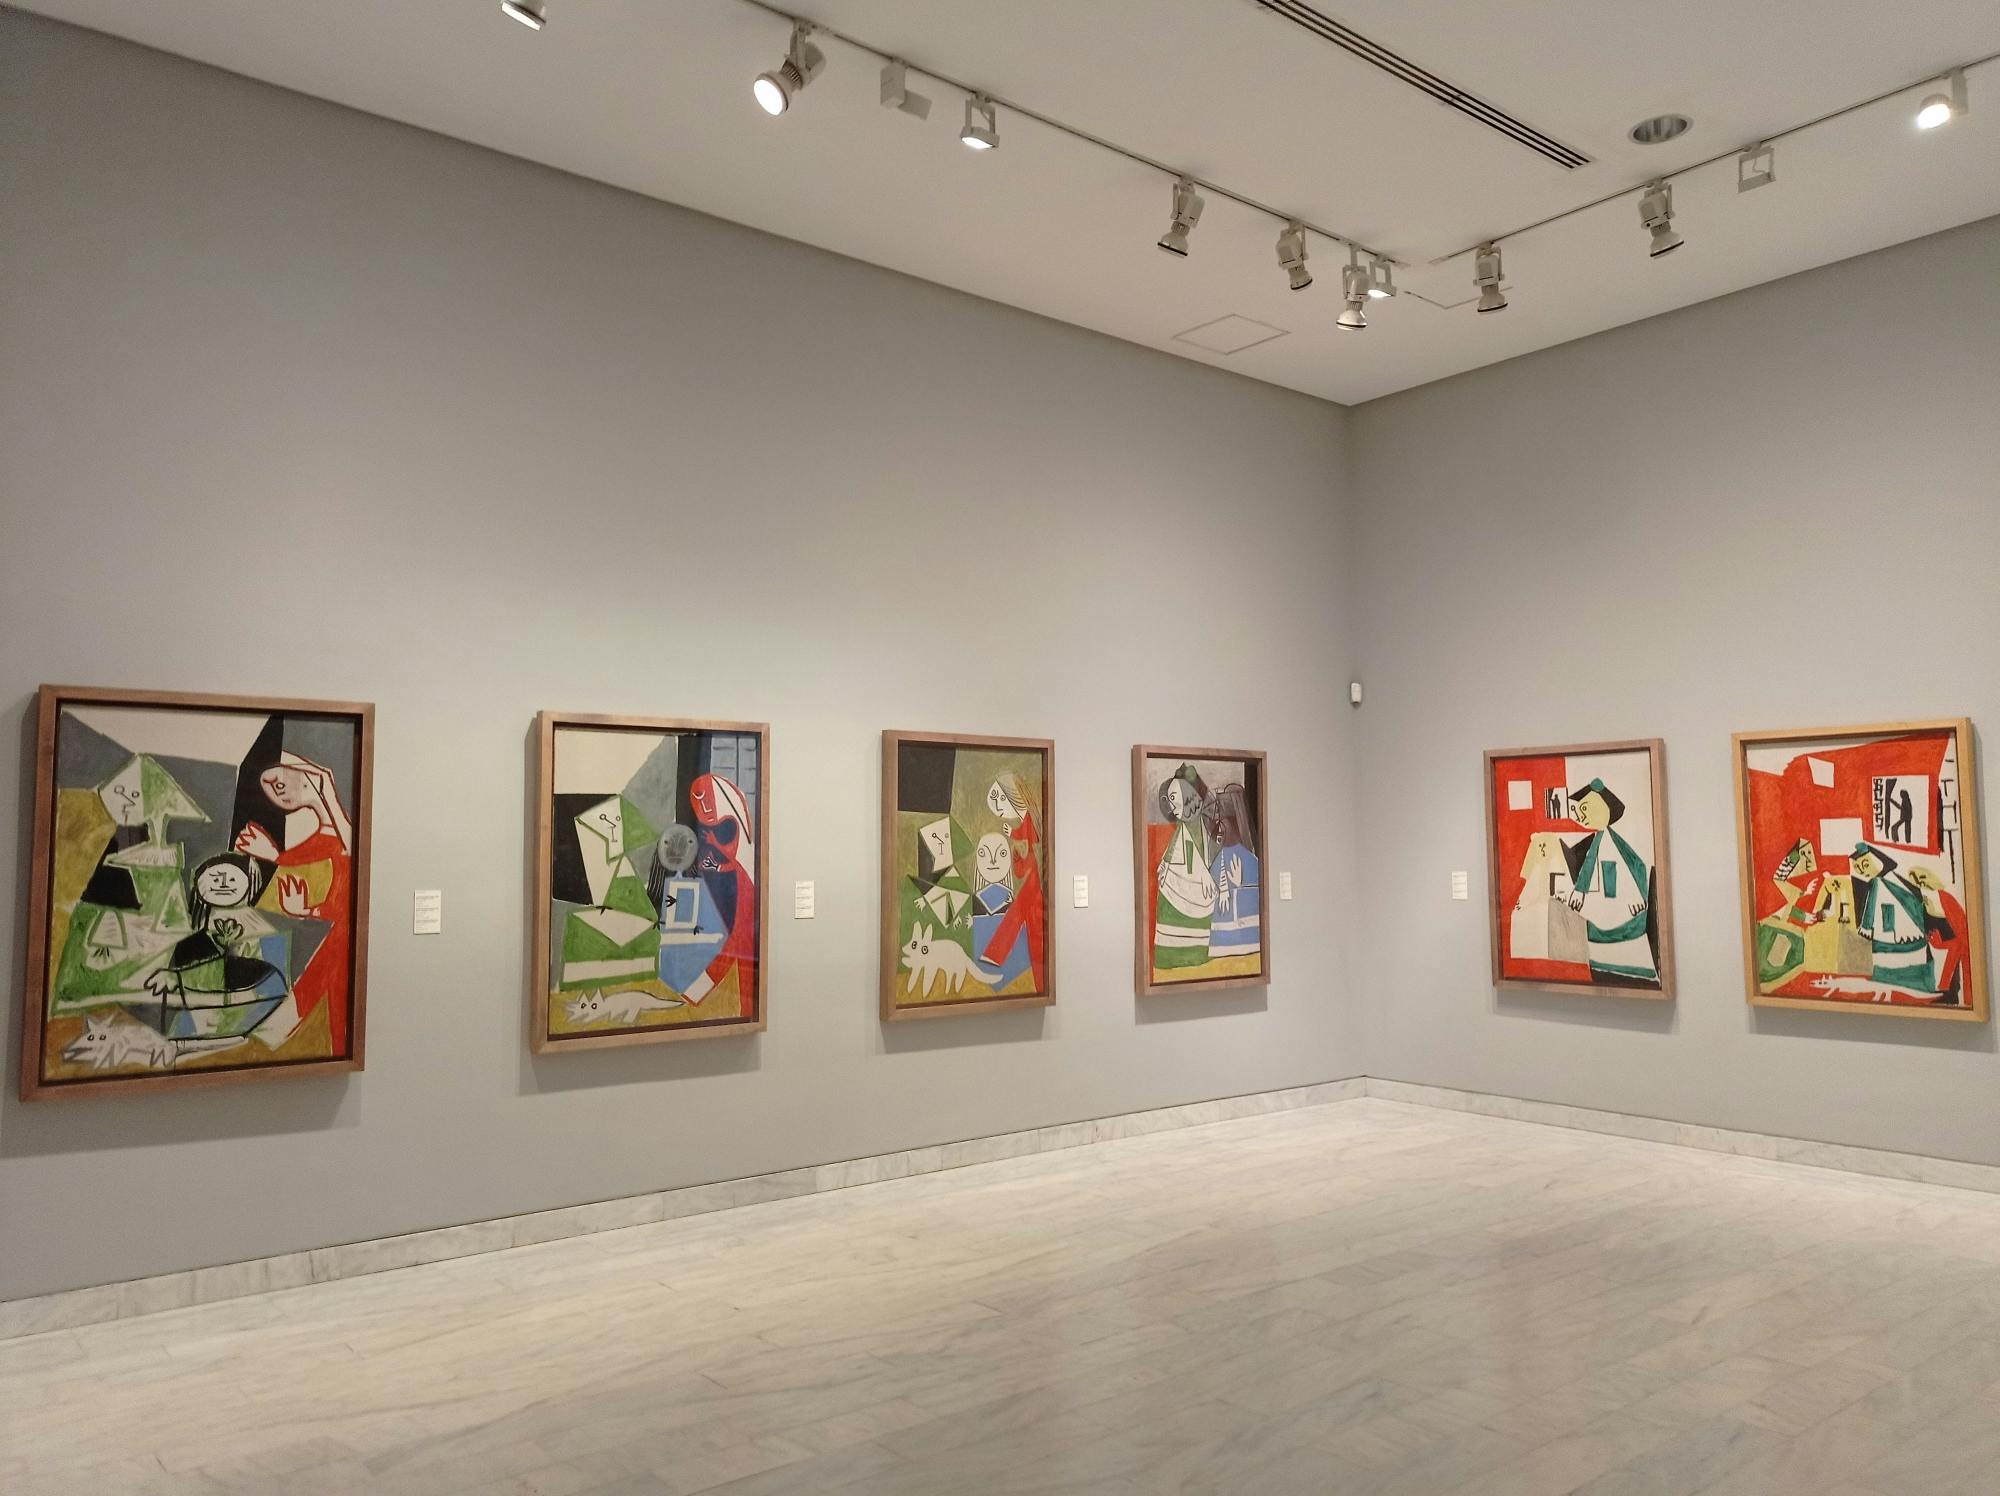 Visita guiada al Museo Picasso de Barcelona con entradas sin colas